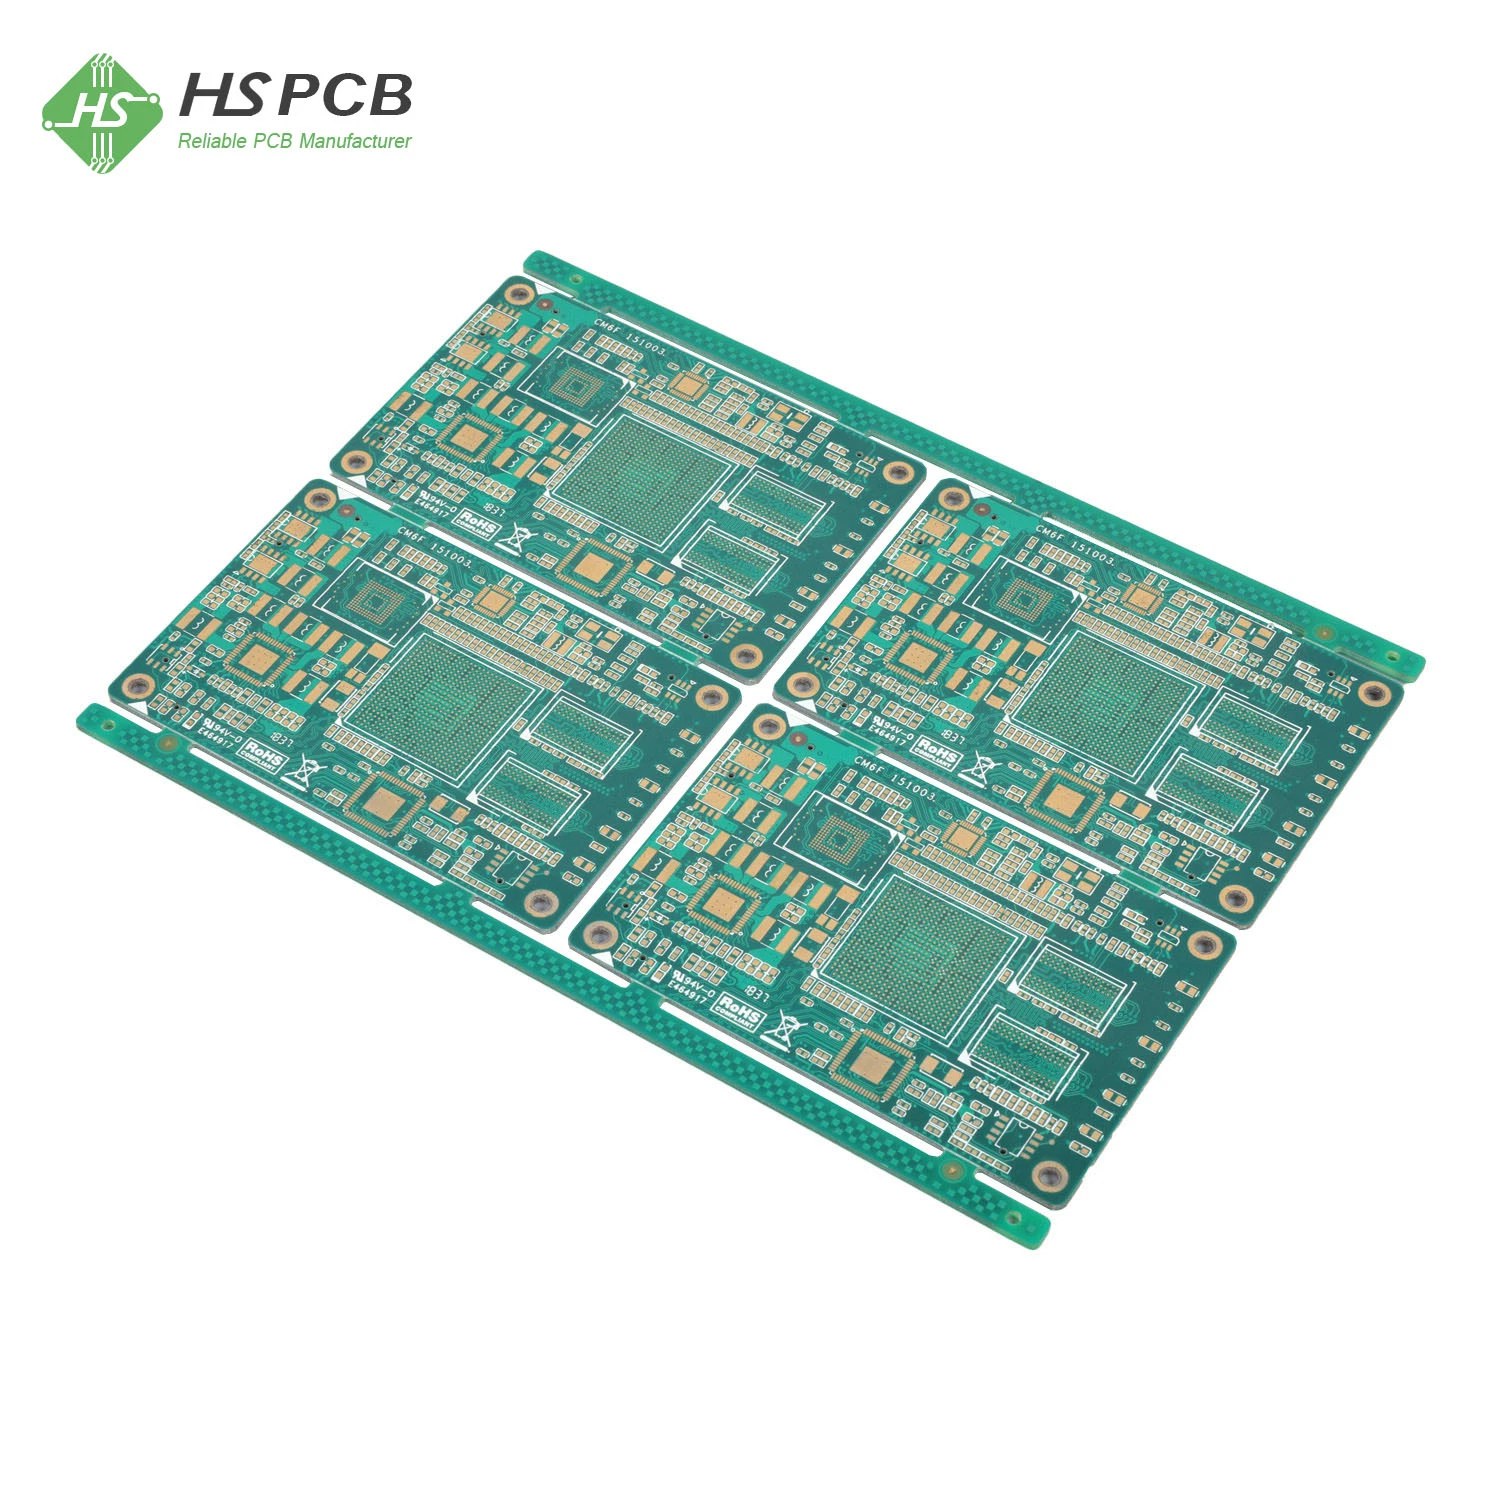 Fabricante de placas de circuito impreso de alta calidad de múltiples capas para electrónica de consumo